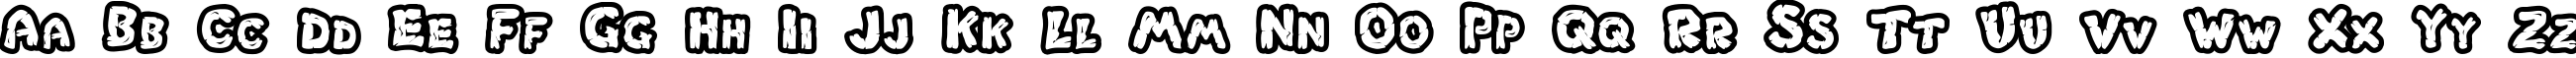 Пример написания английского алфавита шрифтом Chlorinar